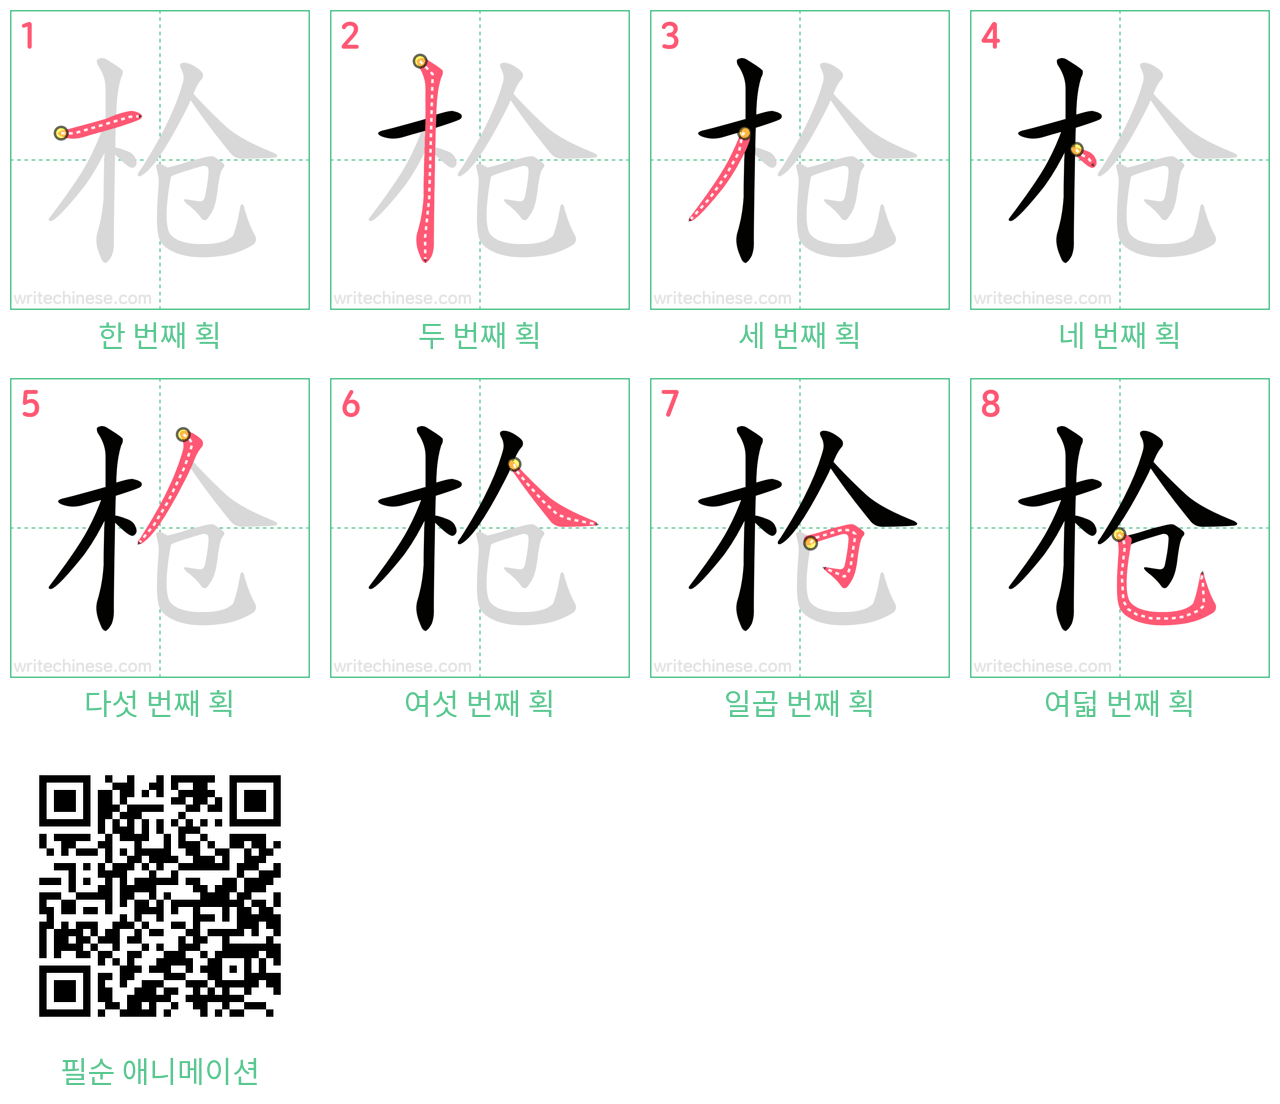 枪 step-by-step stroke order diagrams